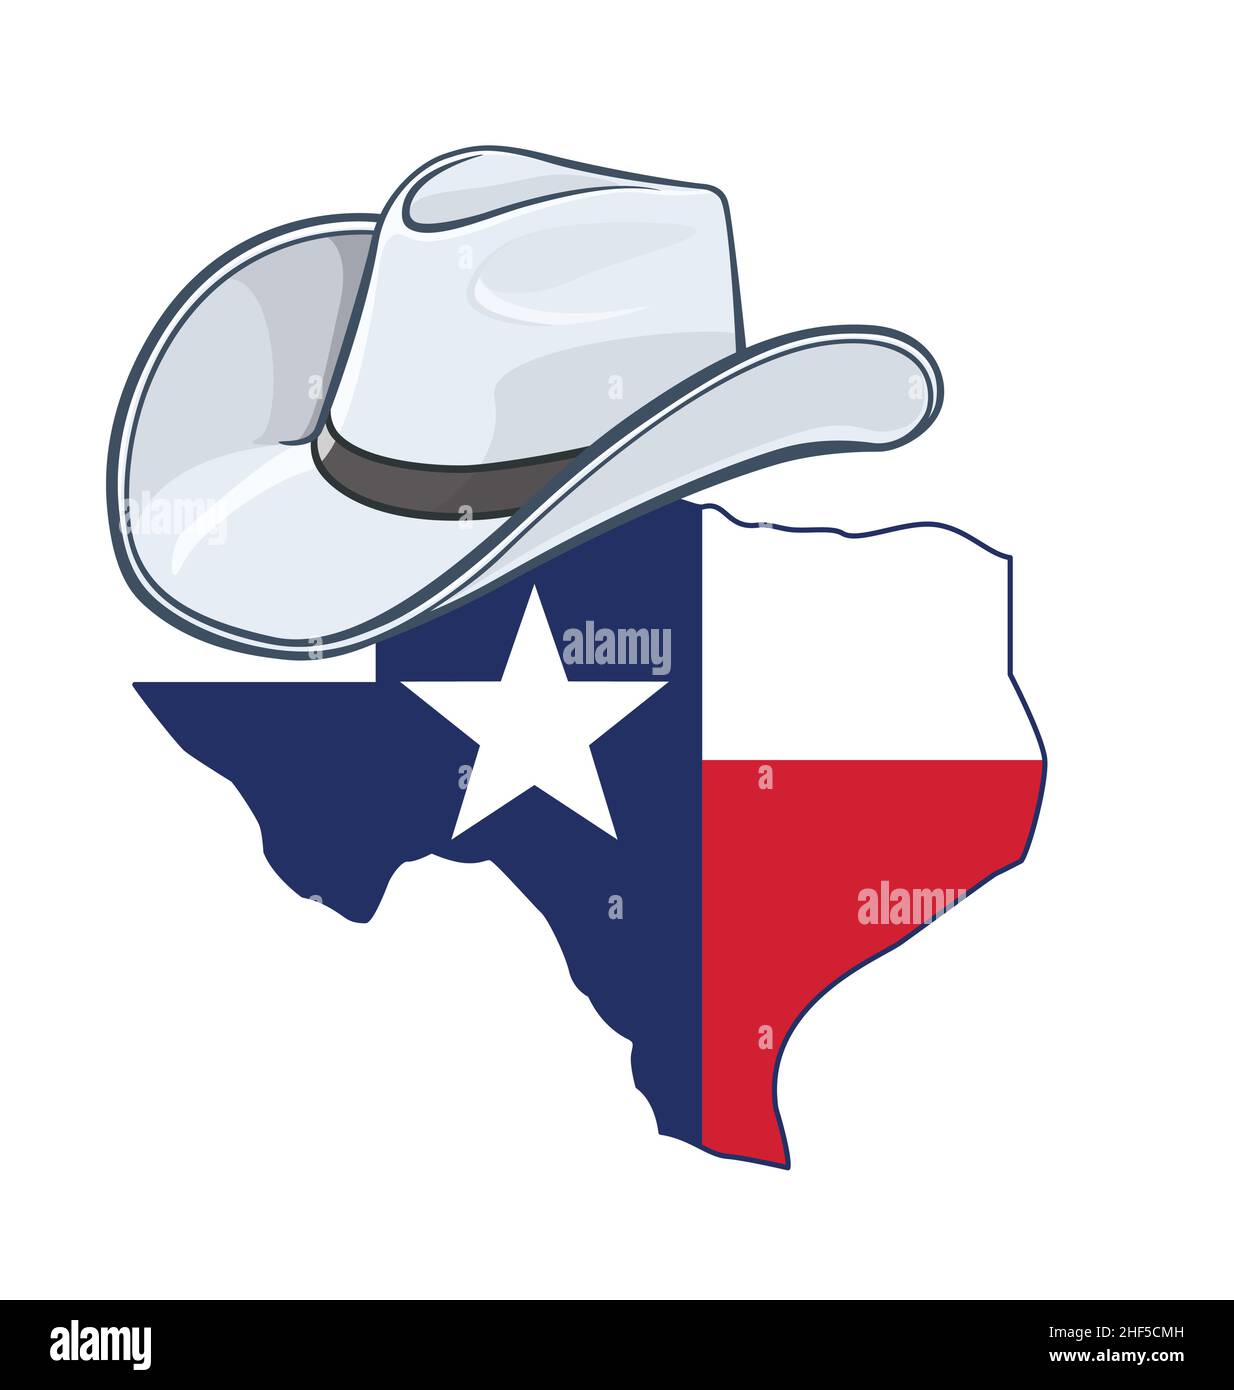 Texas tx State Map Form mit texas State Flag trägt stetson Cowboy Hut Logo  Vektor isoliert auf weißem Hintergrund Stock-Vektorgrafik - Alamy